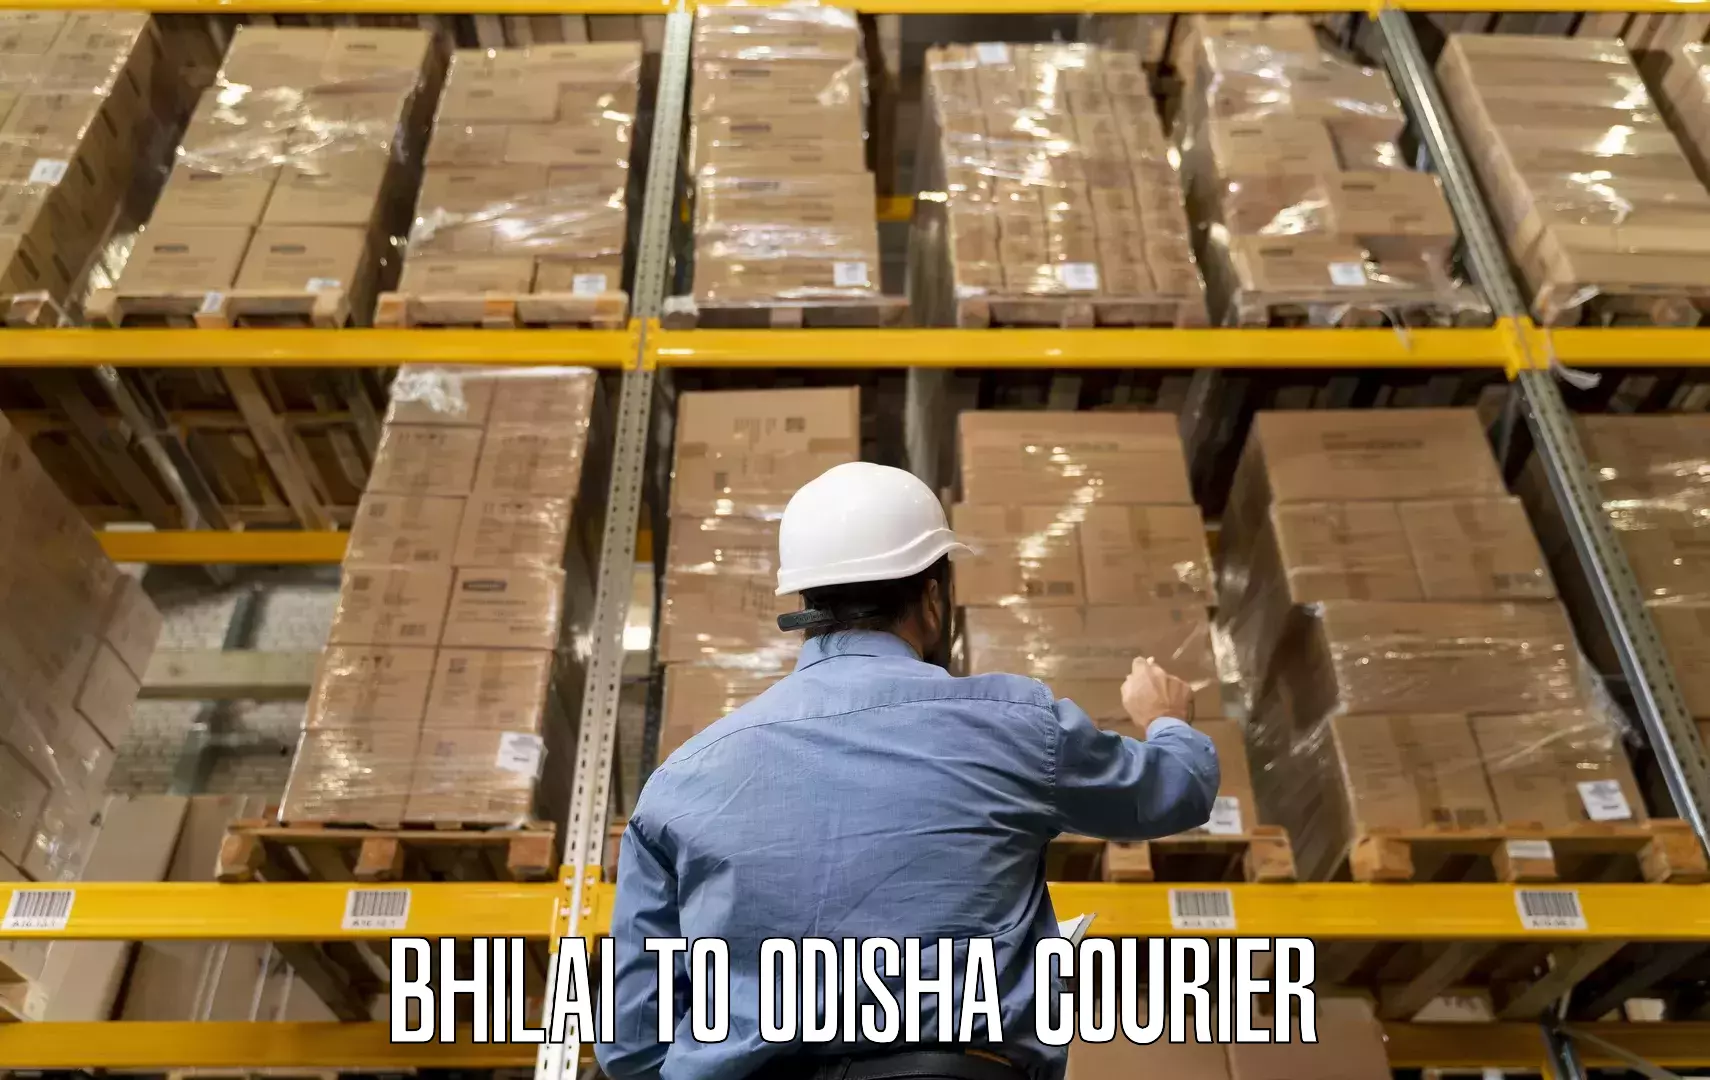 Furniture delivery service Bhilai to Jharsuguda